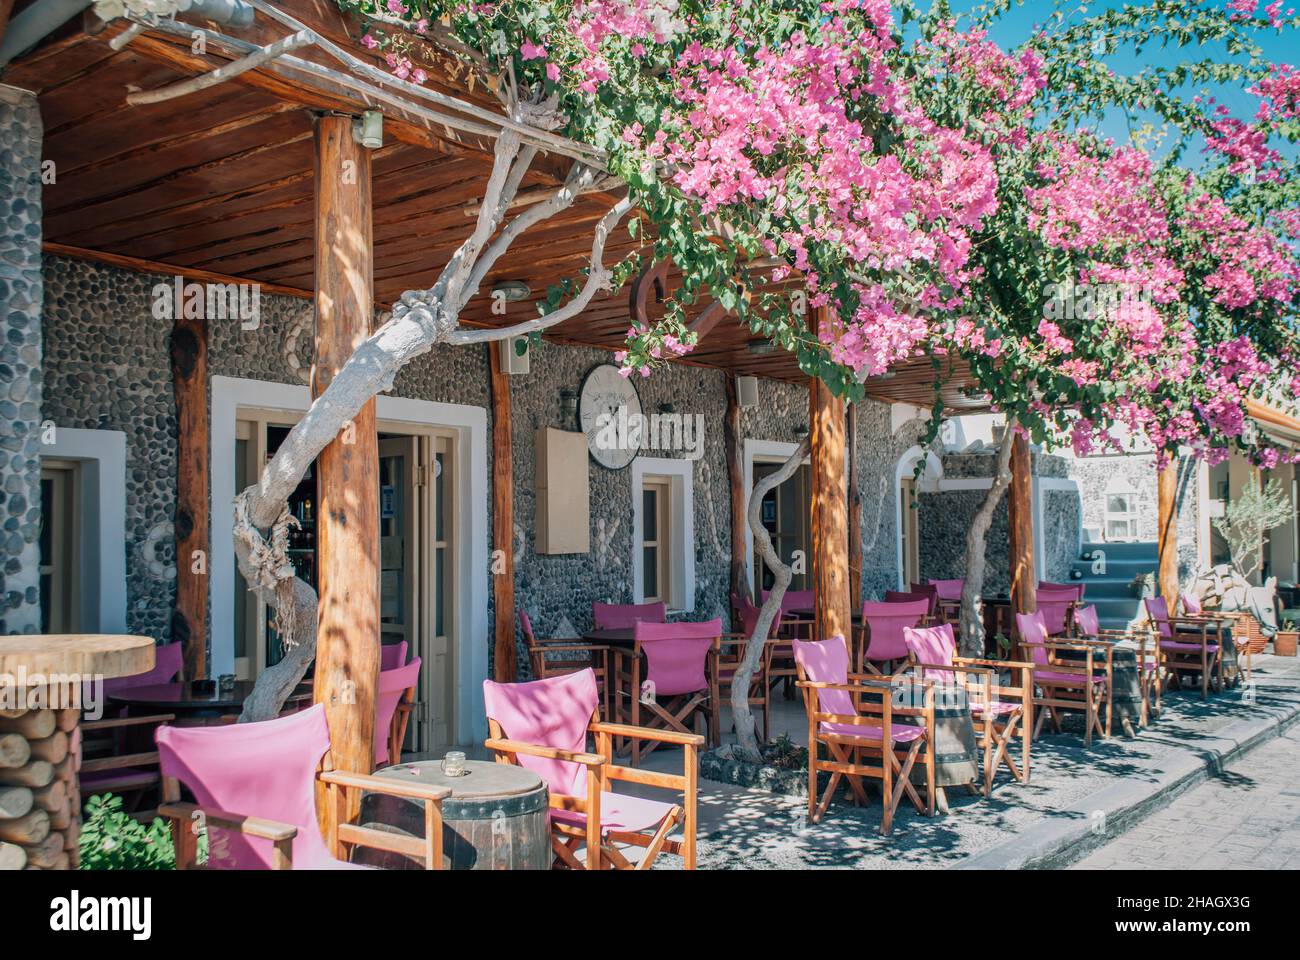 Die Veranda des Sommercafés mit rosafarbenen Sesseln ist mit rosafarbenen Blumen verschlungen Stockfoto